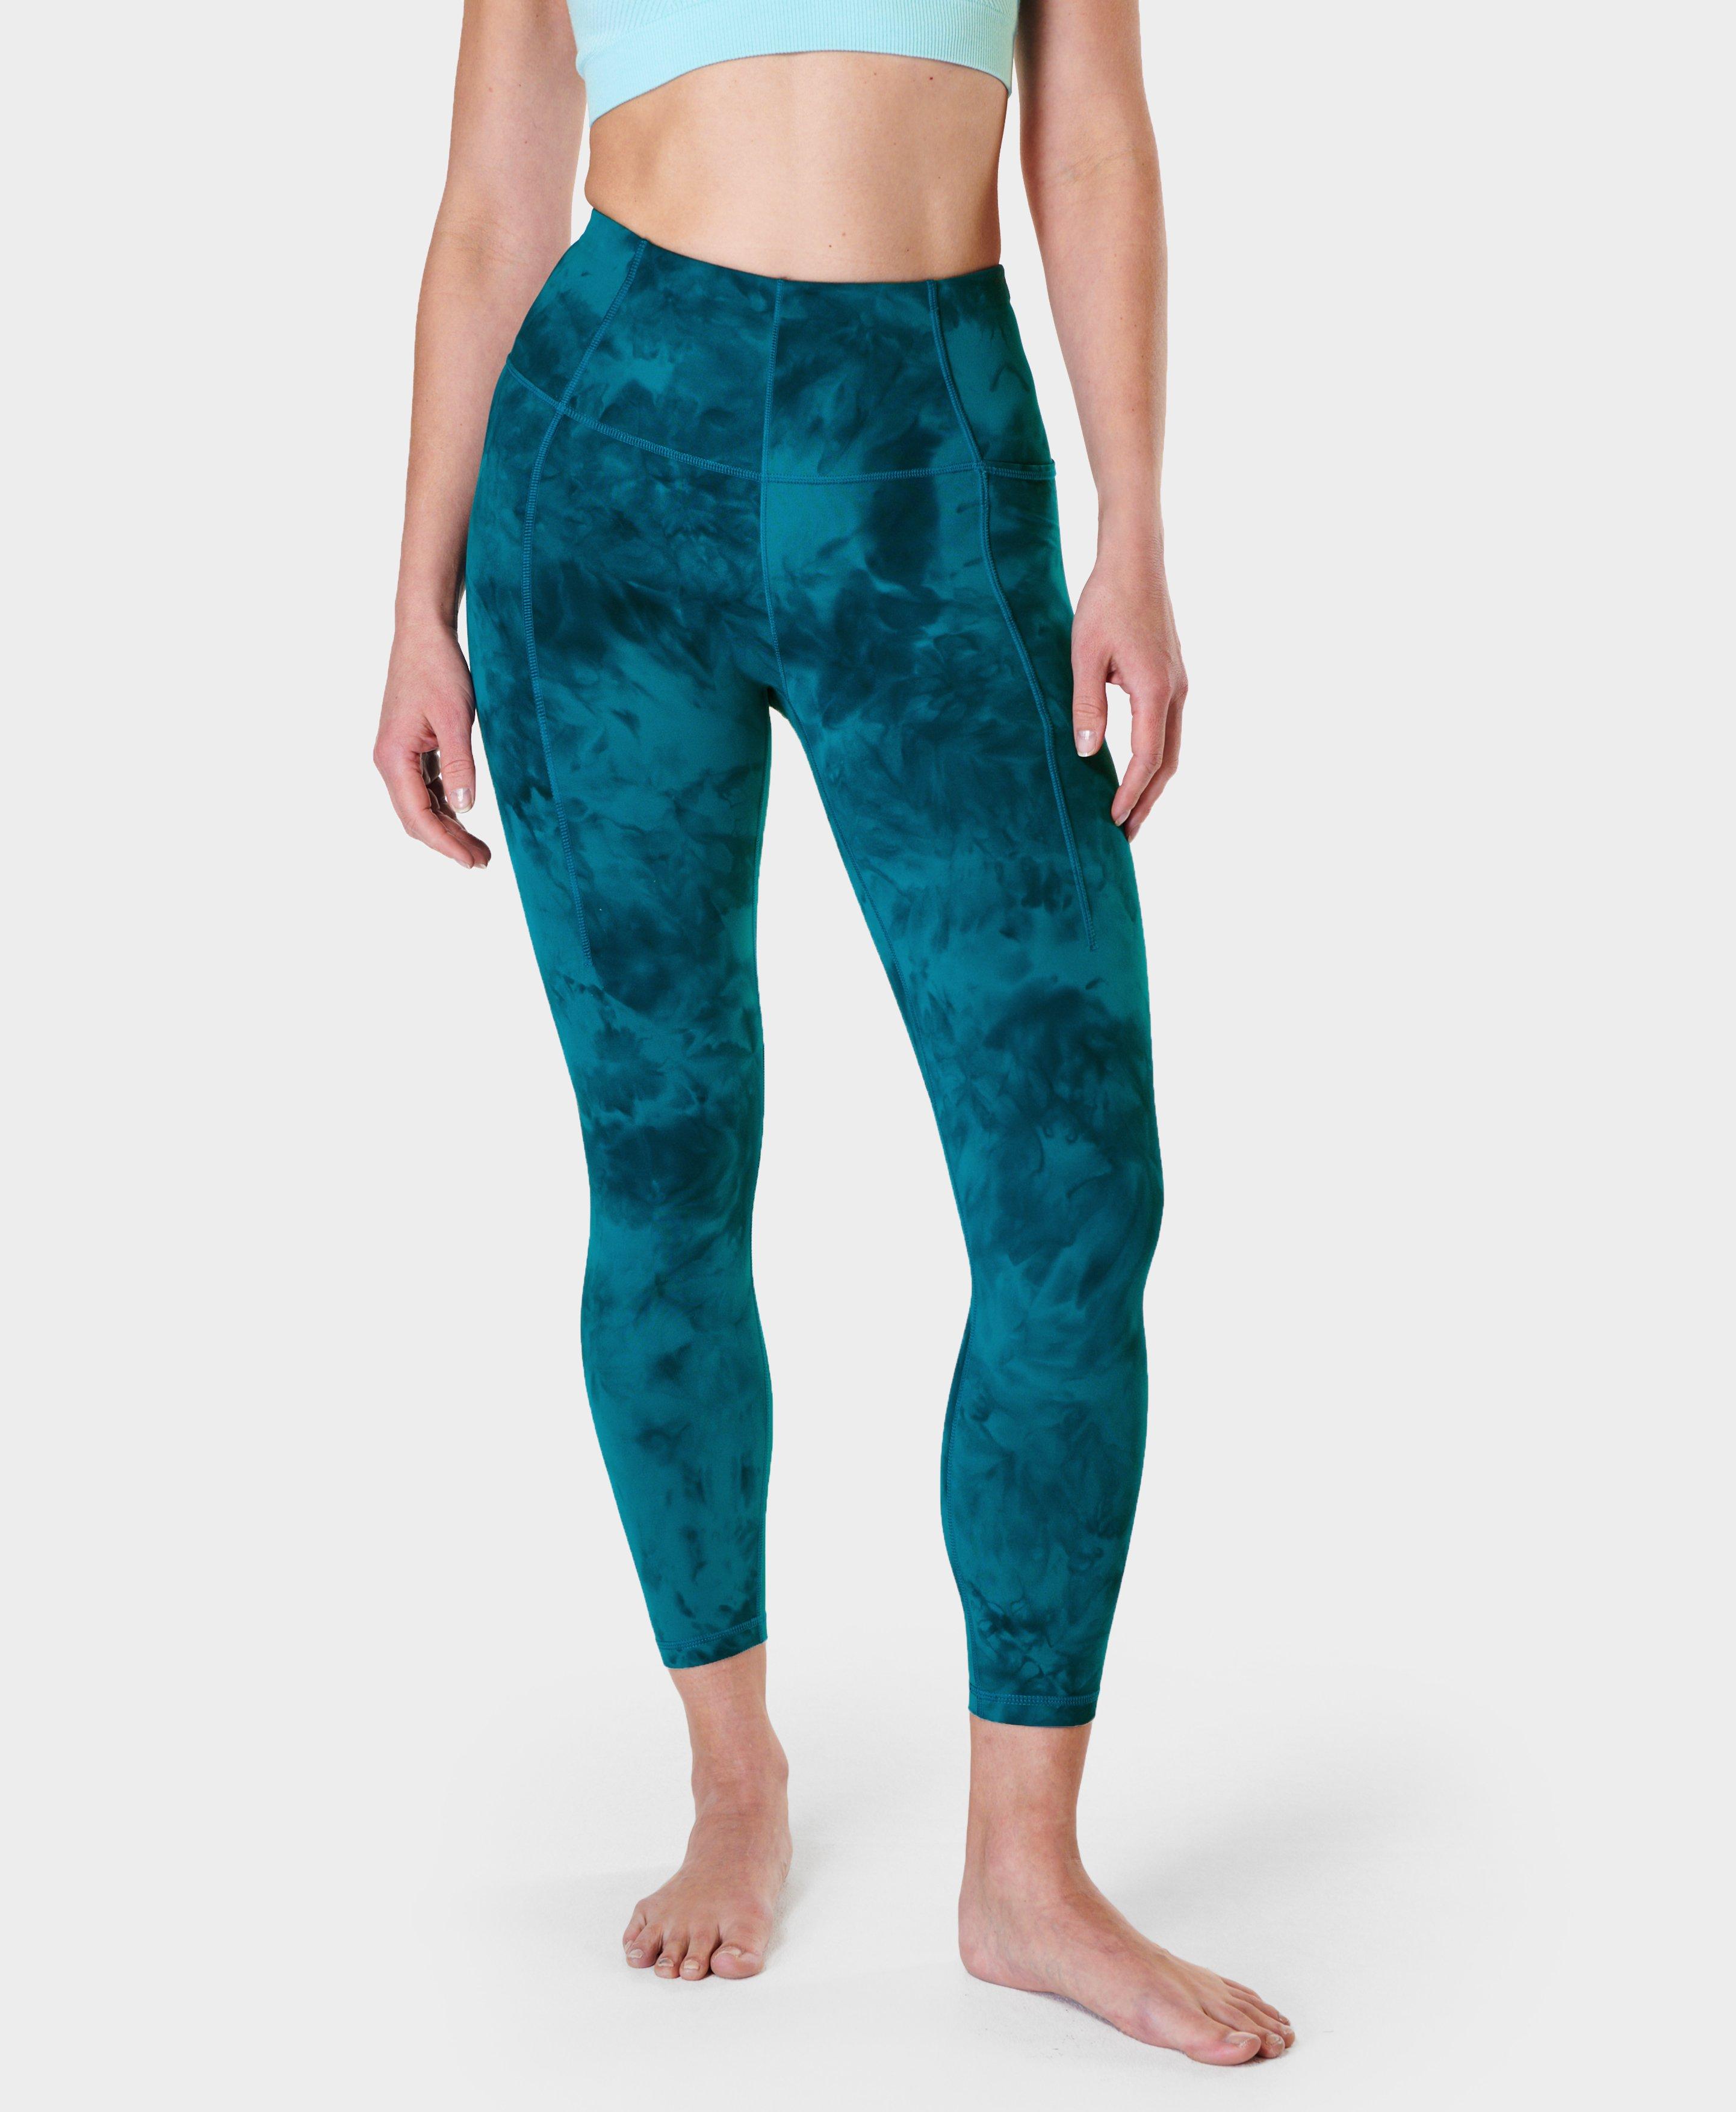 Super Soft 7/8 Yoga Leggings - Reef Teal Blue Spray Dye, Women's Leggings